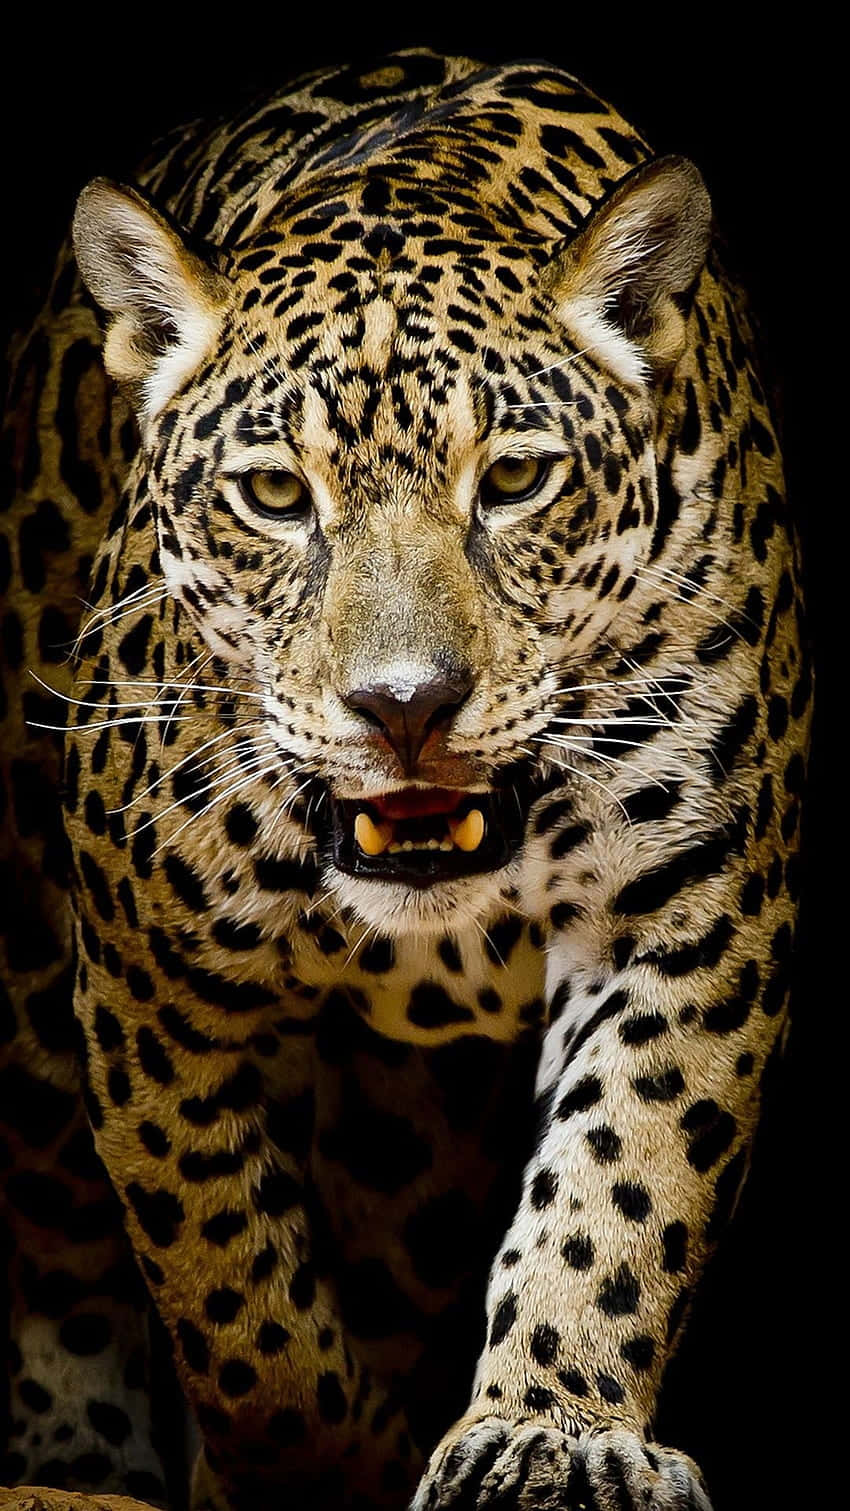 Enmäktig Och Vild Leopard I Sin Naturliga Miljö